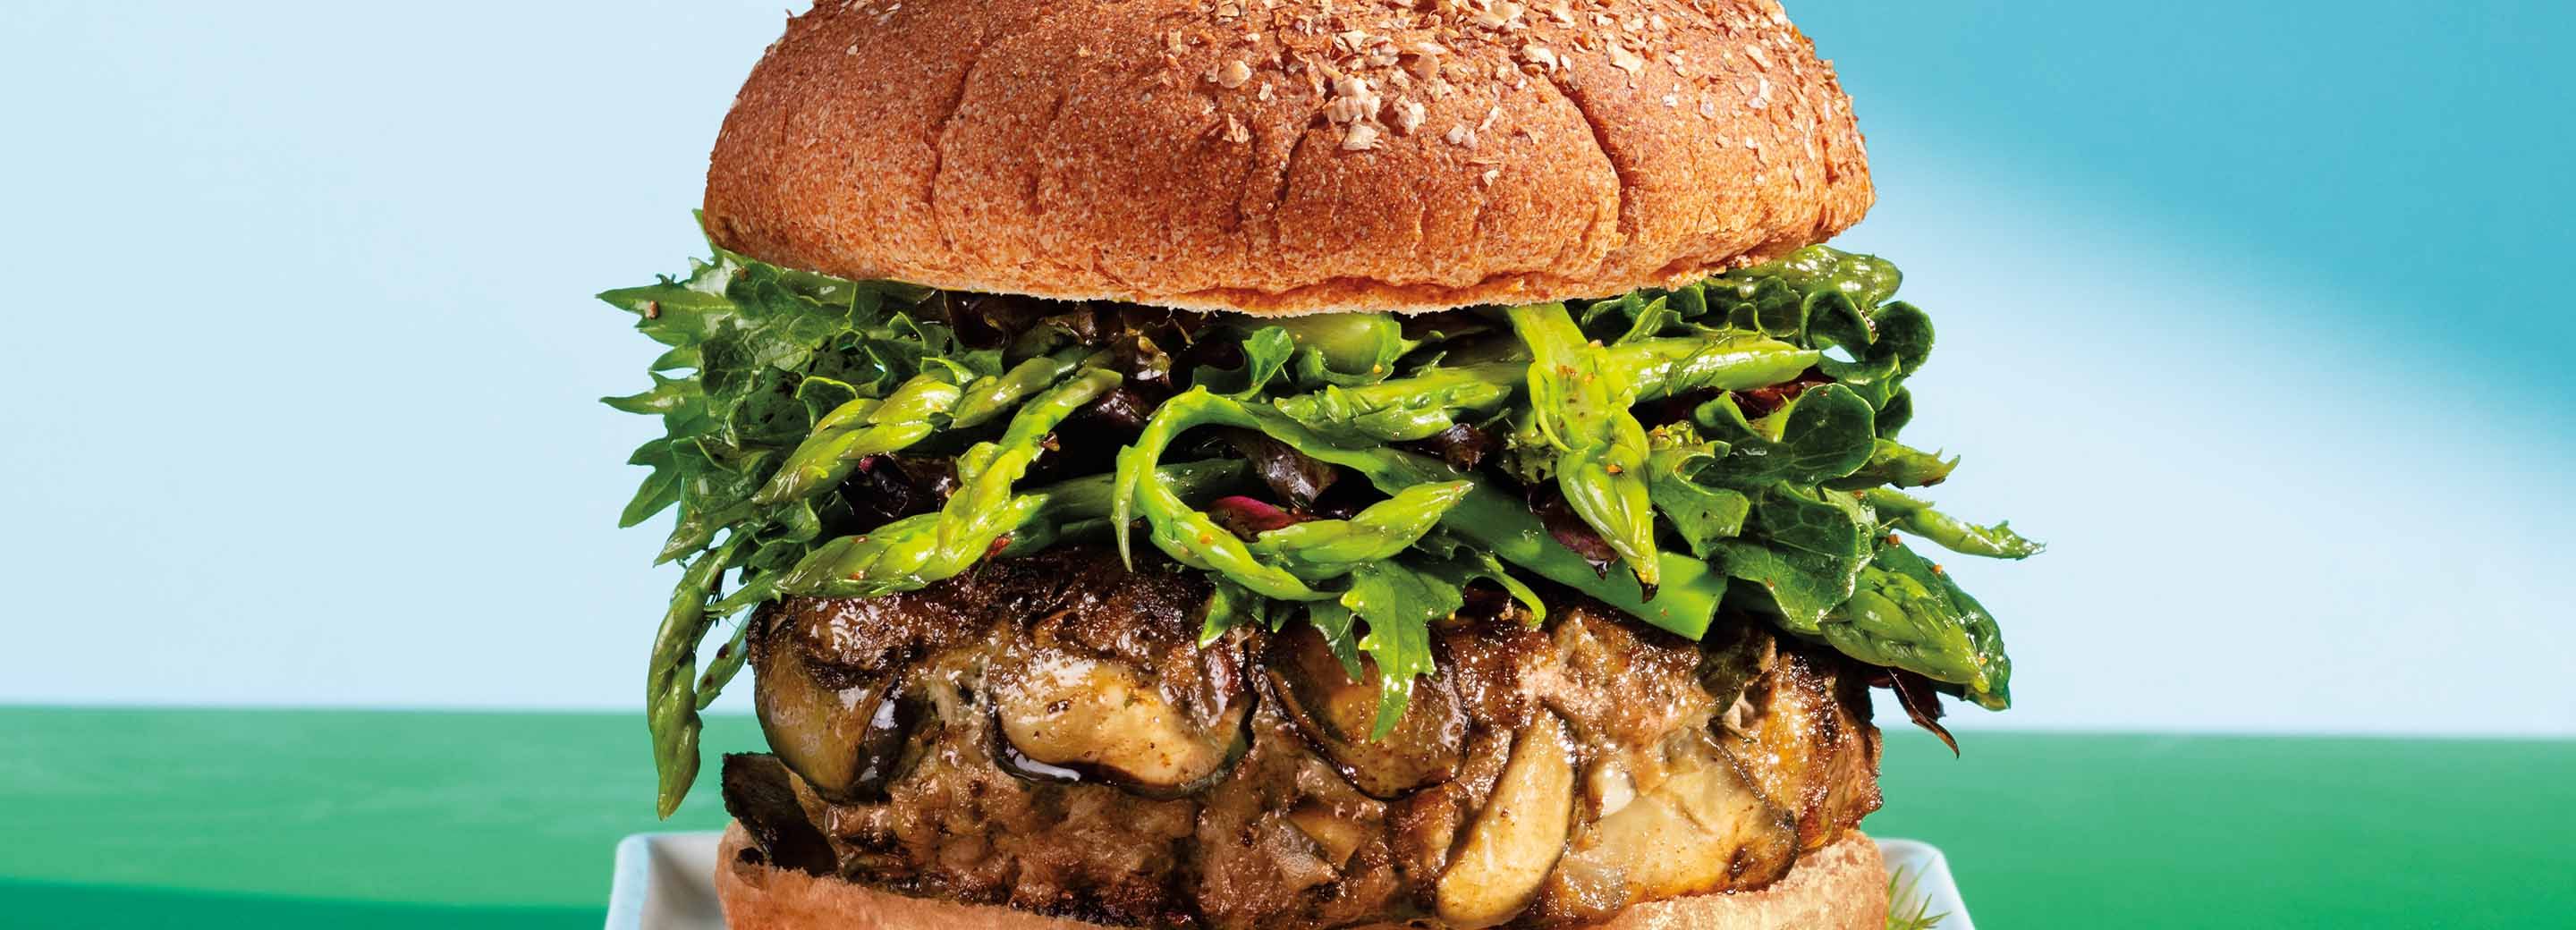 Beef & Mushroom Burgers with Asparagus Salad